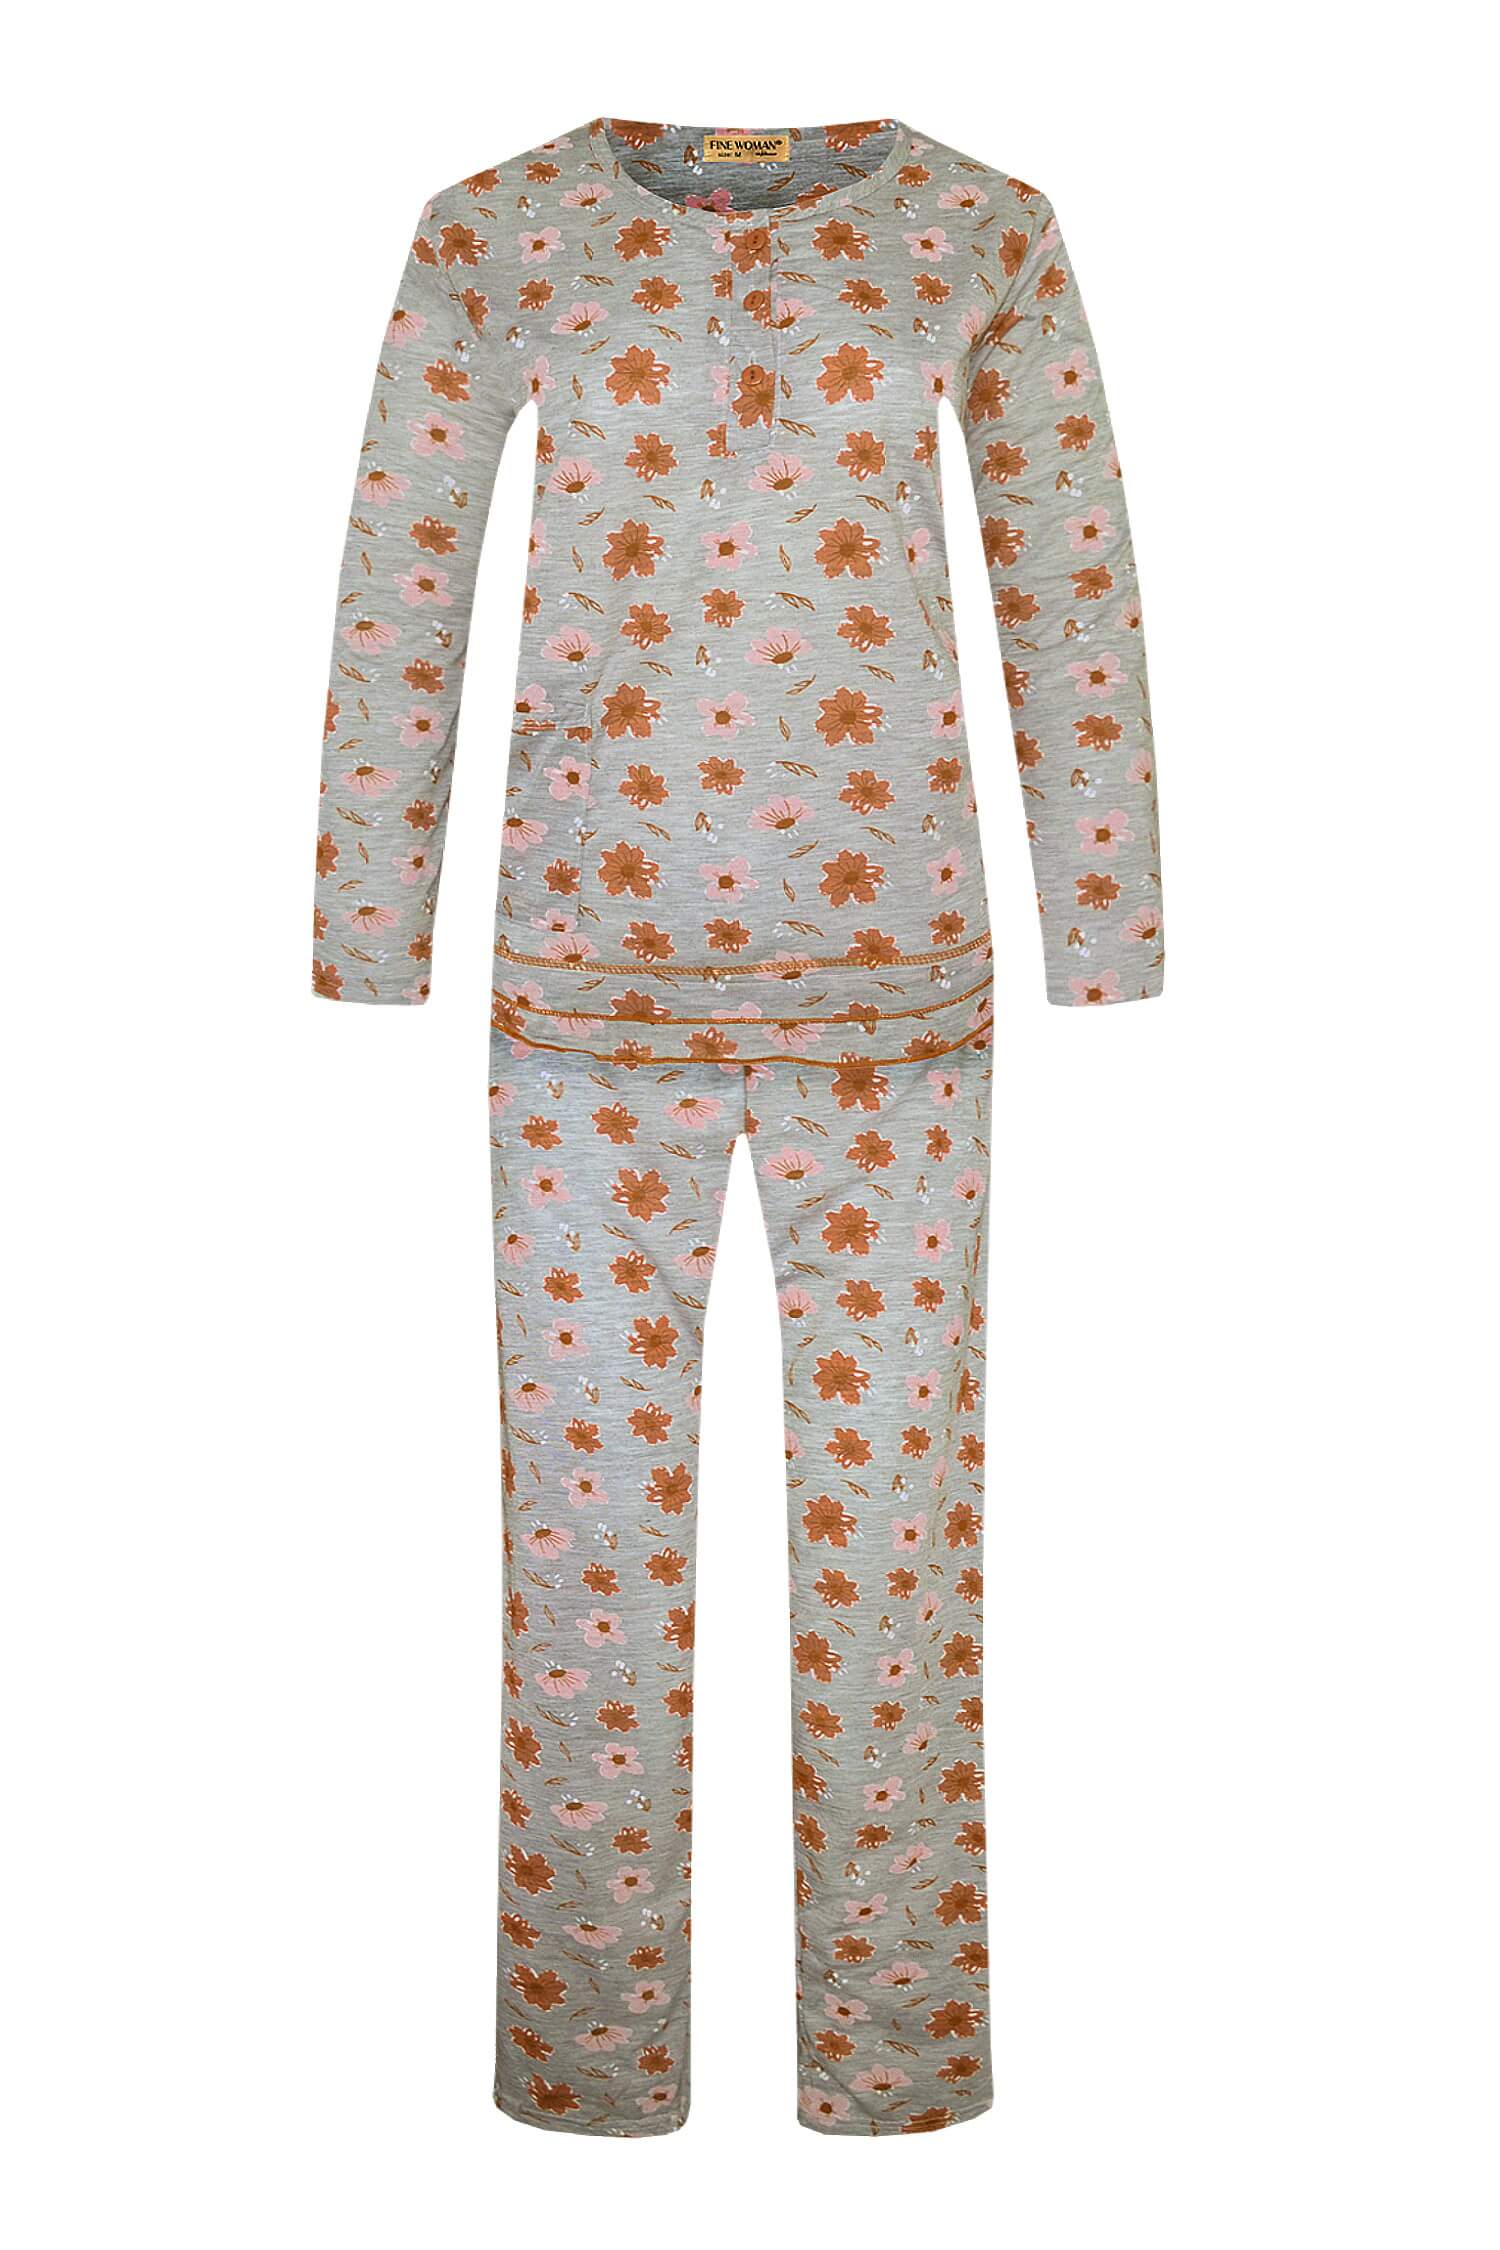 Arenda dámské dlouhé pyžamo 2297 3XL oranžová